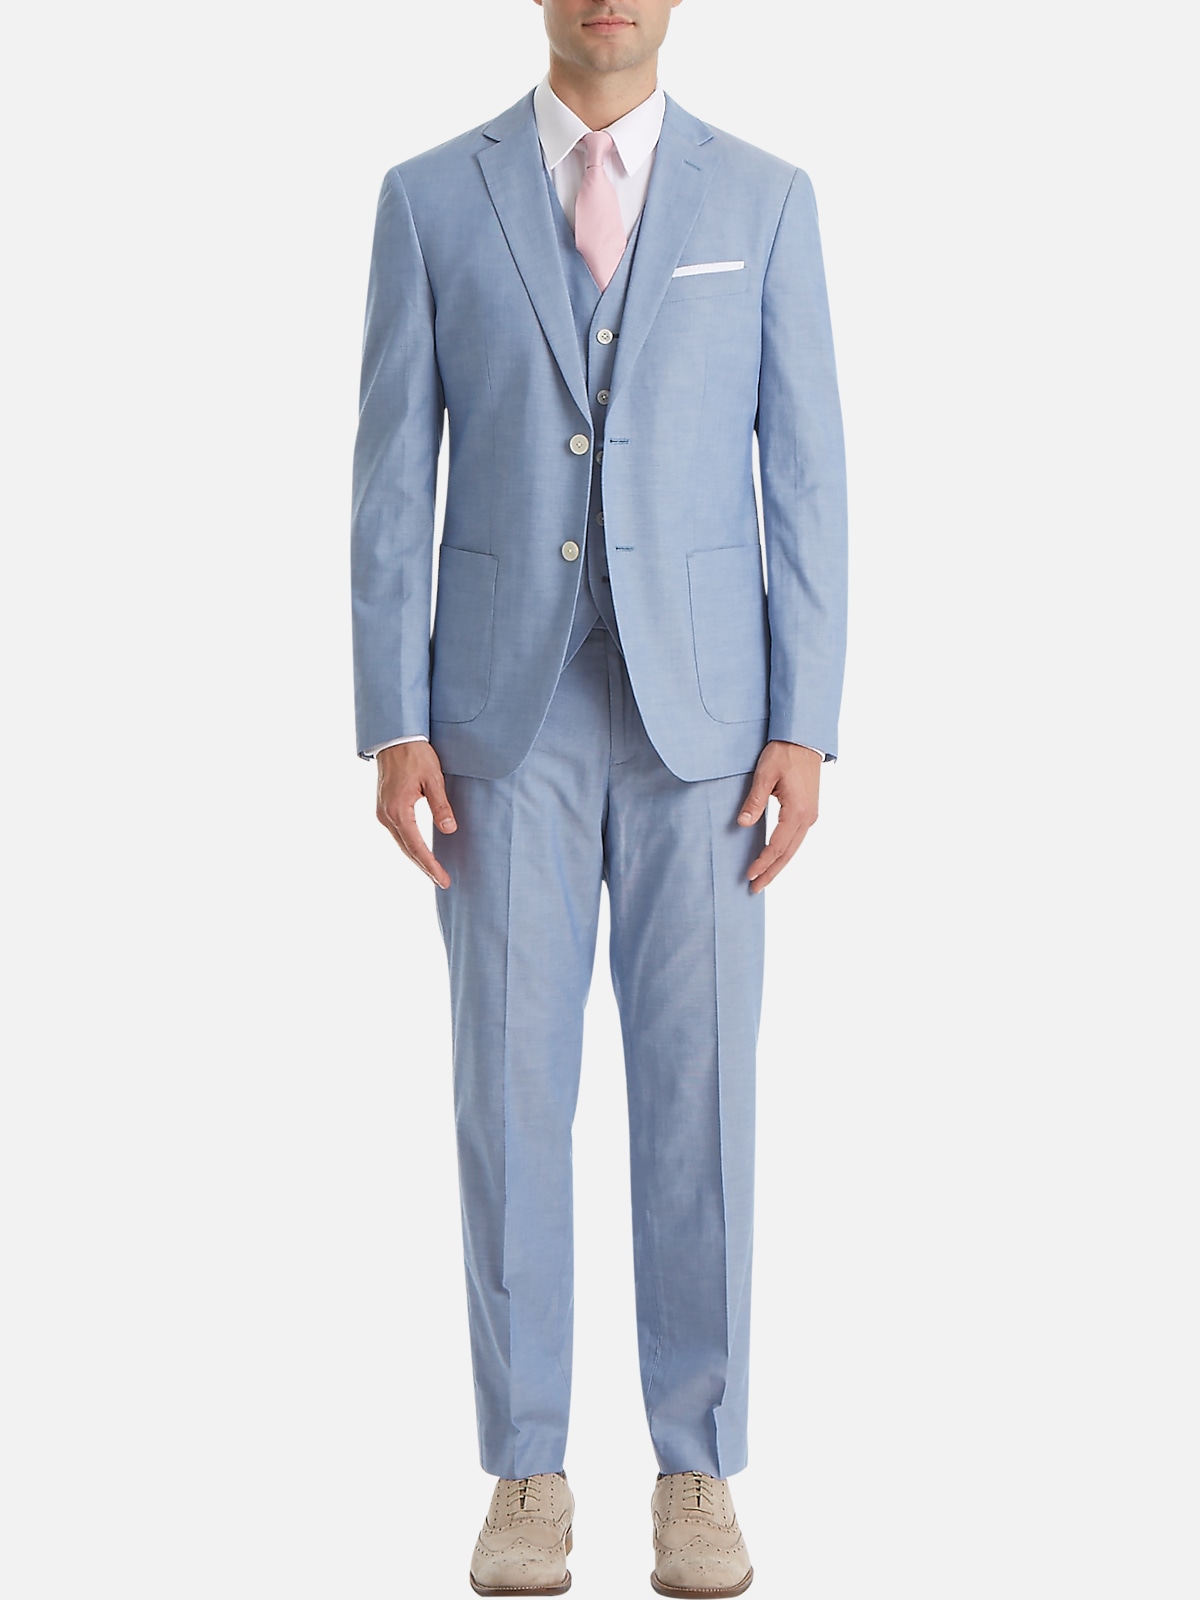 Lauren By Ralph Lauren Classic Fit Suit Separates Vest | Men's Suits &  Separates | Moores Clothing